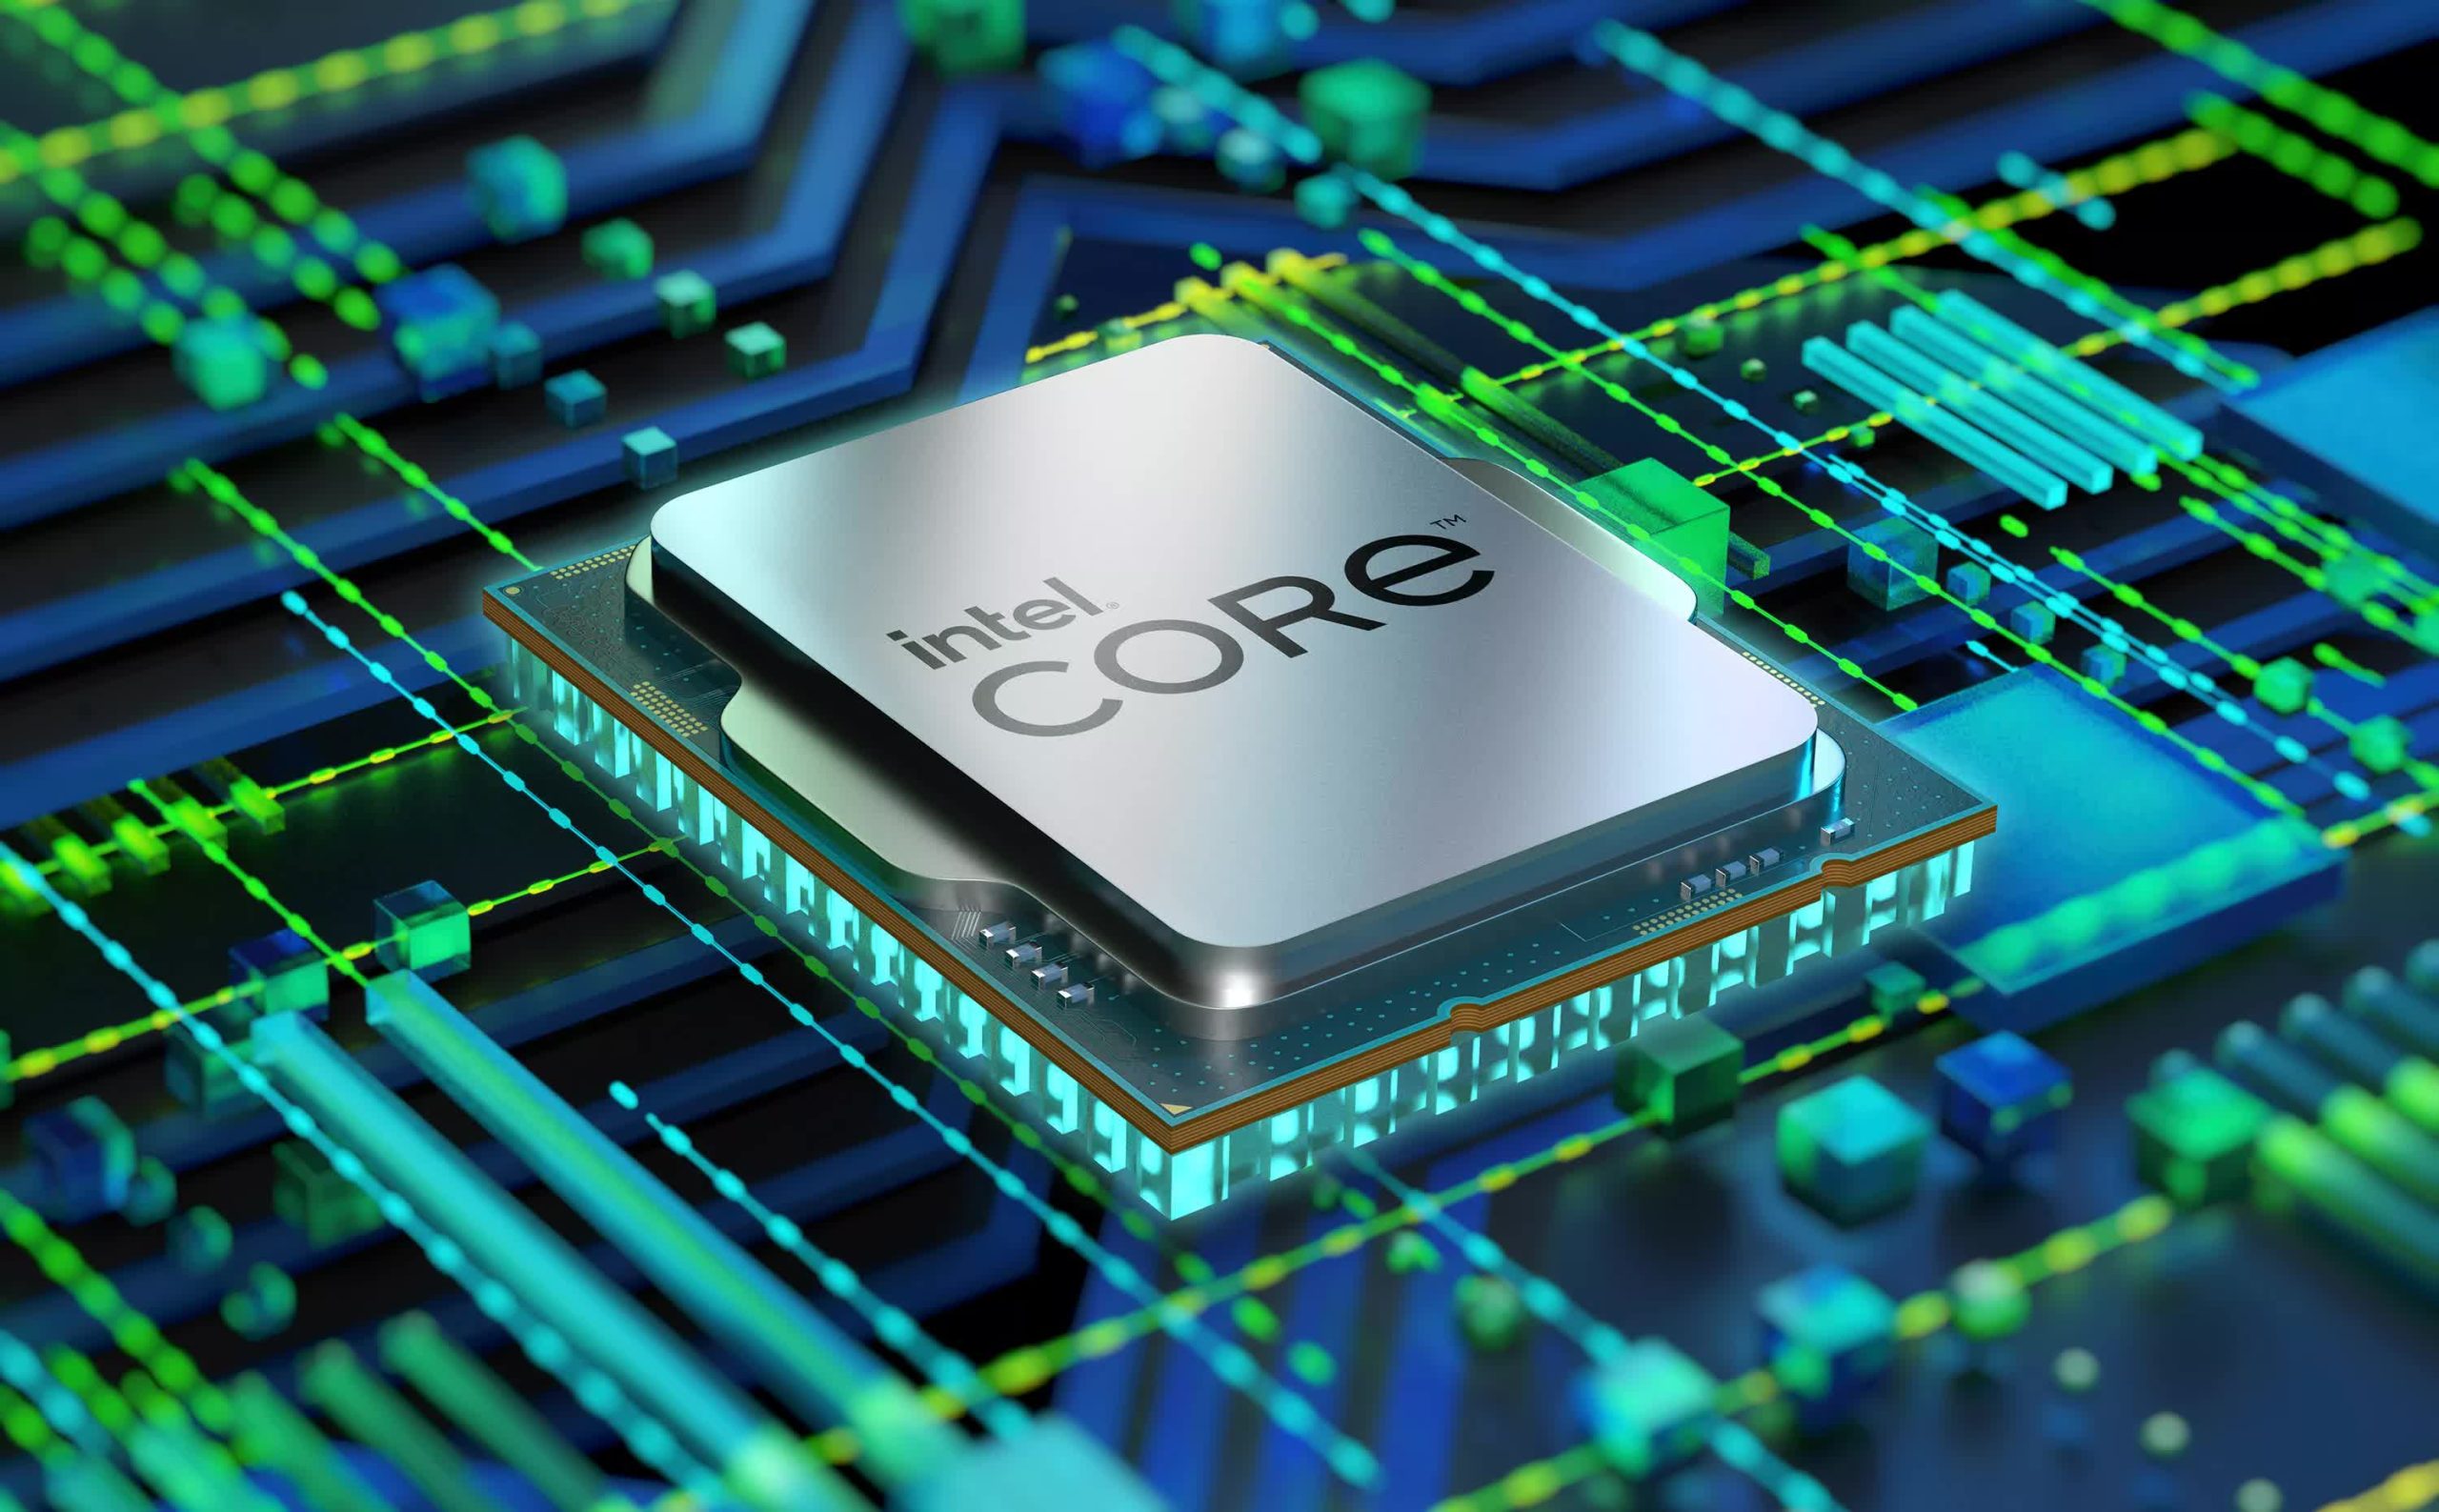 Los próximos procesadores de Intel podrían llevar los límites de temperatura máxima a 105 Celsius